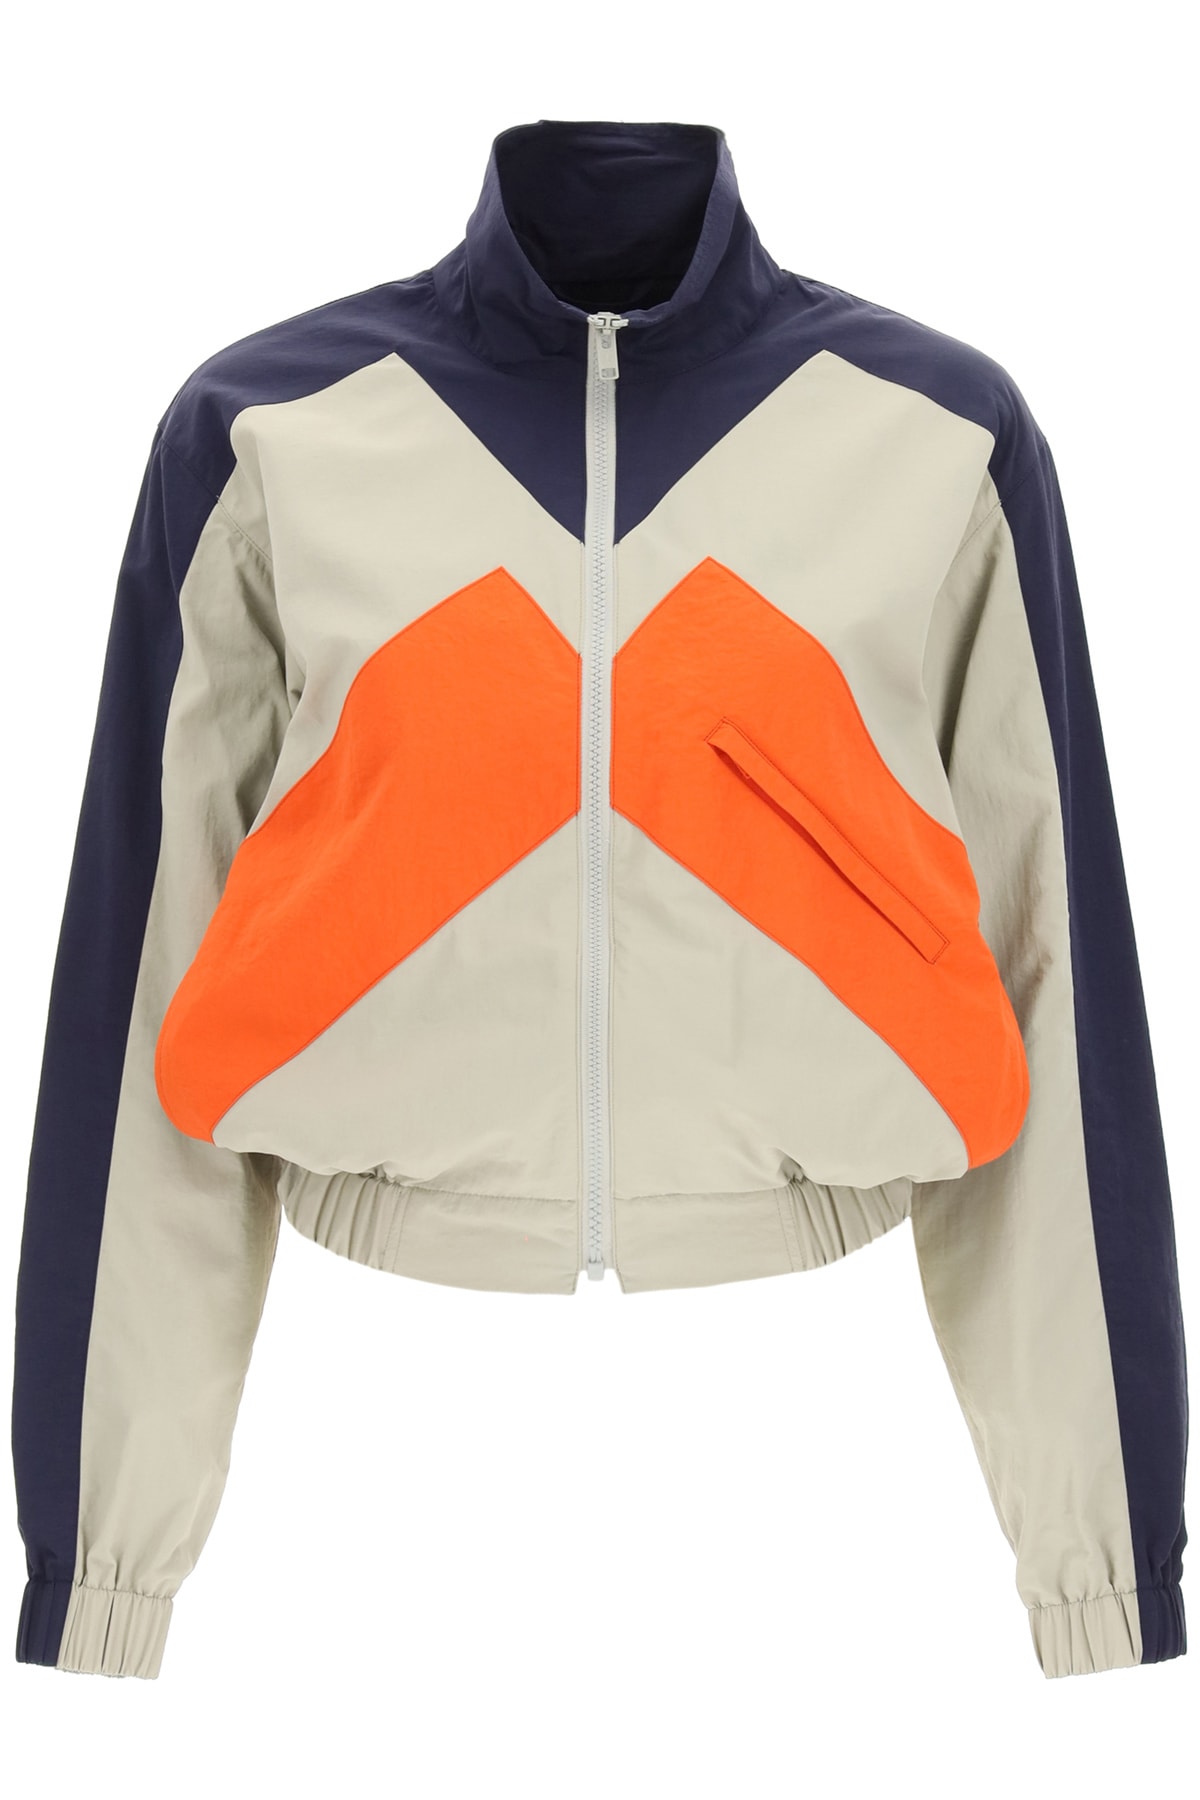 Kenzo Kenzo Sport Little X Color Block Windbreaker Jacket